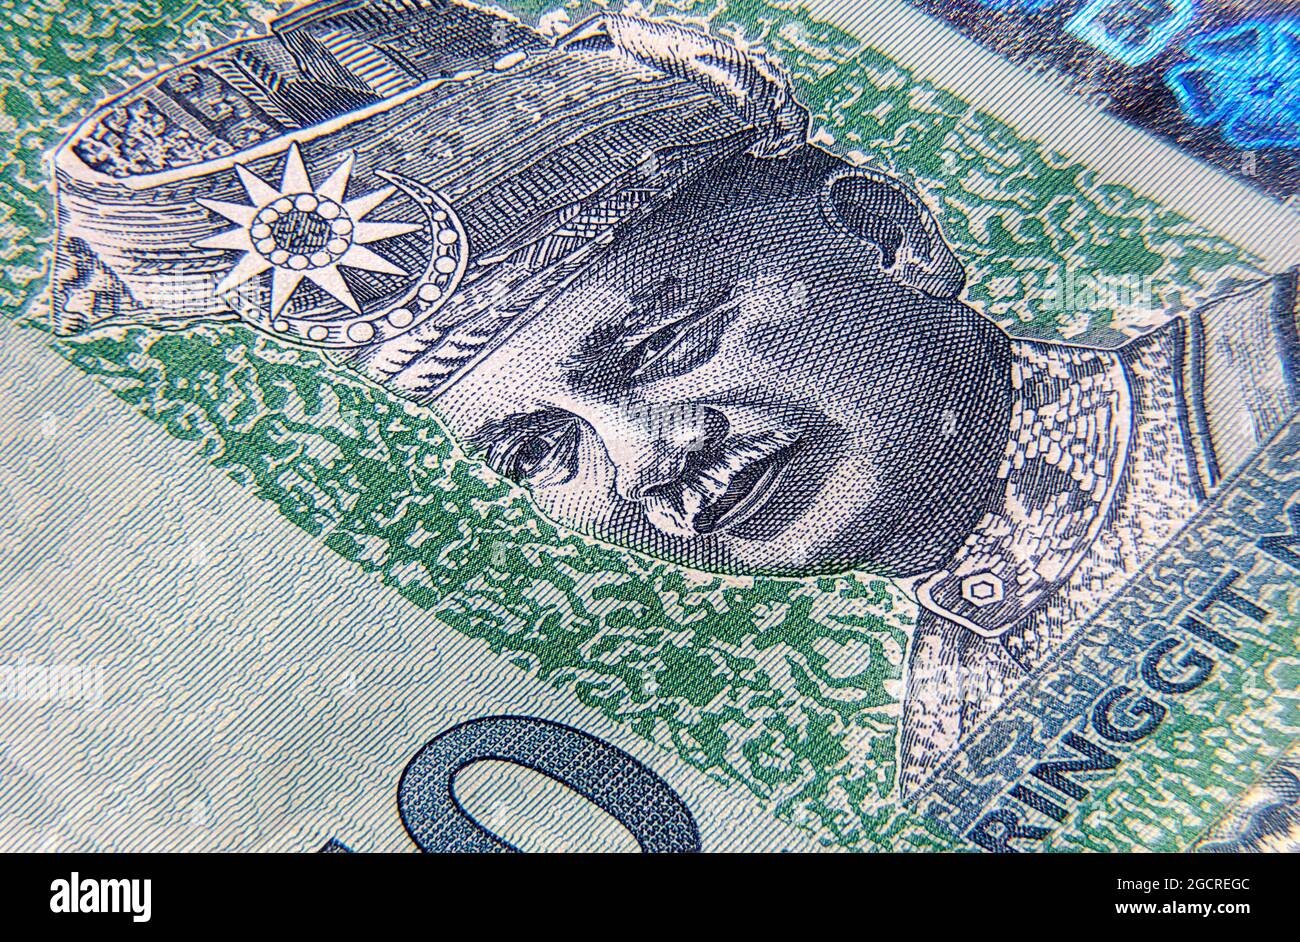 Super macro photographie de 50 Ringgit Malaisie. Gros plan extrême sur un billet de banque RM 50. Au centre le grand 50. D'un côté, l'hibiscus rouge fleurit sur le Banque D'Images